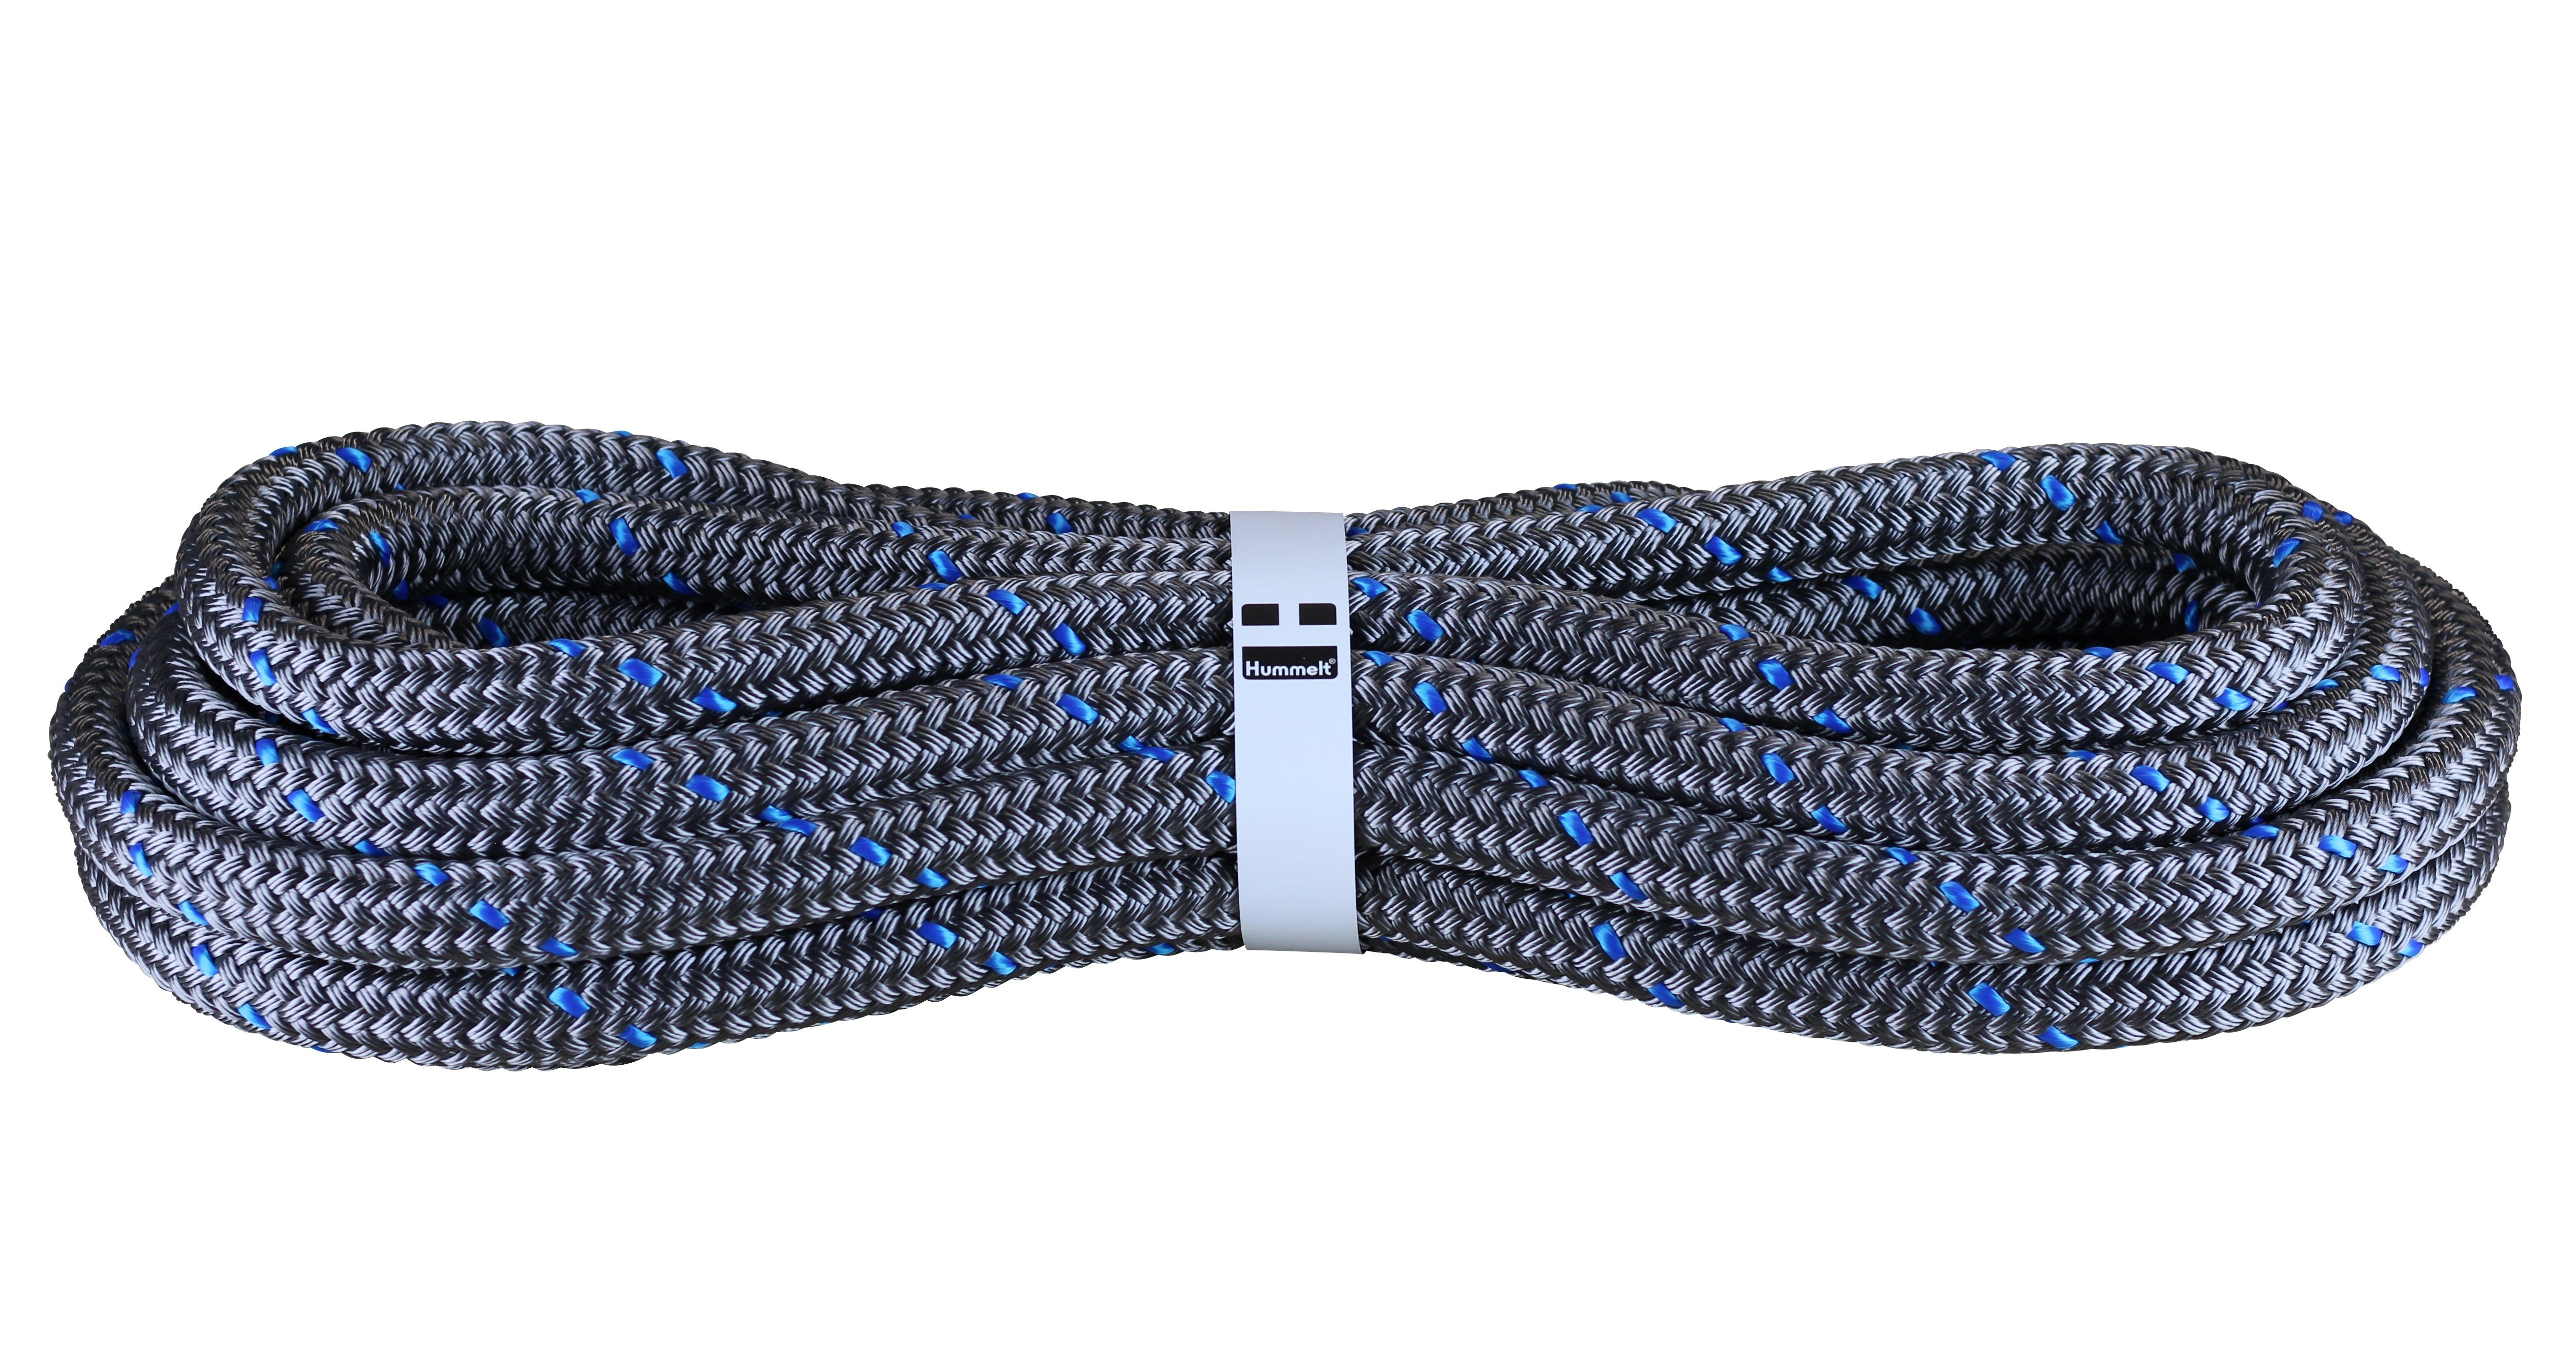 Hummelt® Hochleistungs- Festmacher Seil (Polyesterseil 14mm, 16mm, 18mm silbergrau mit Kennung), versch. Längen (bis 40m) und versch. Farben rot, blau